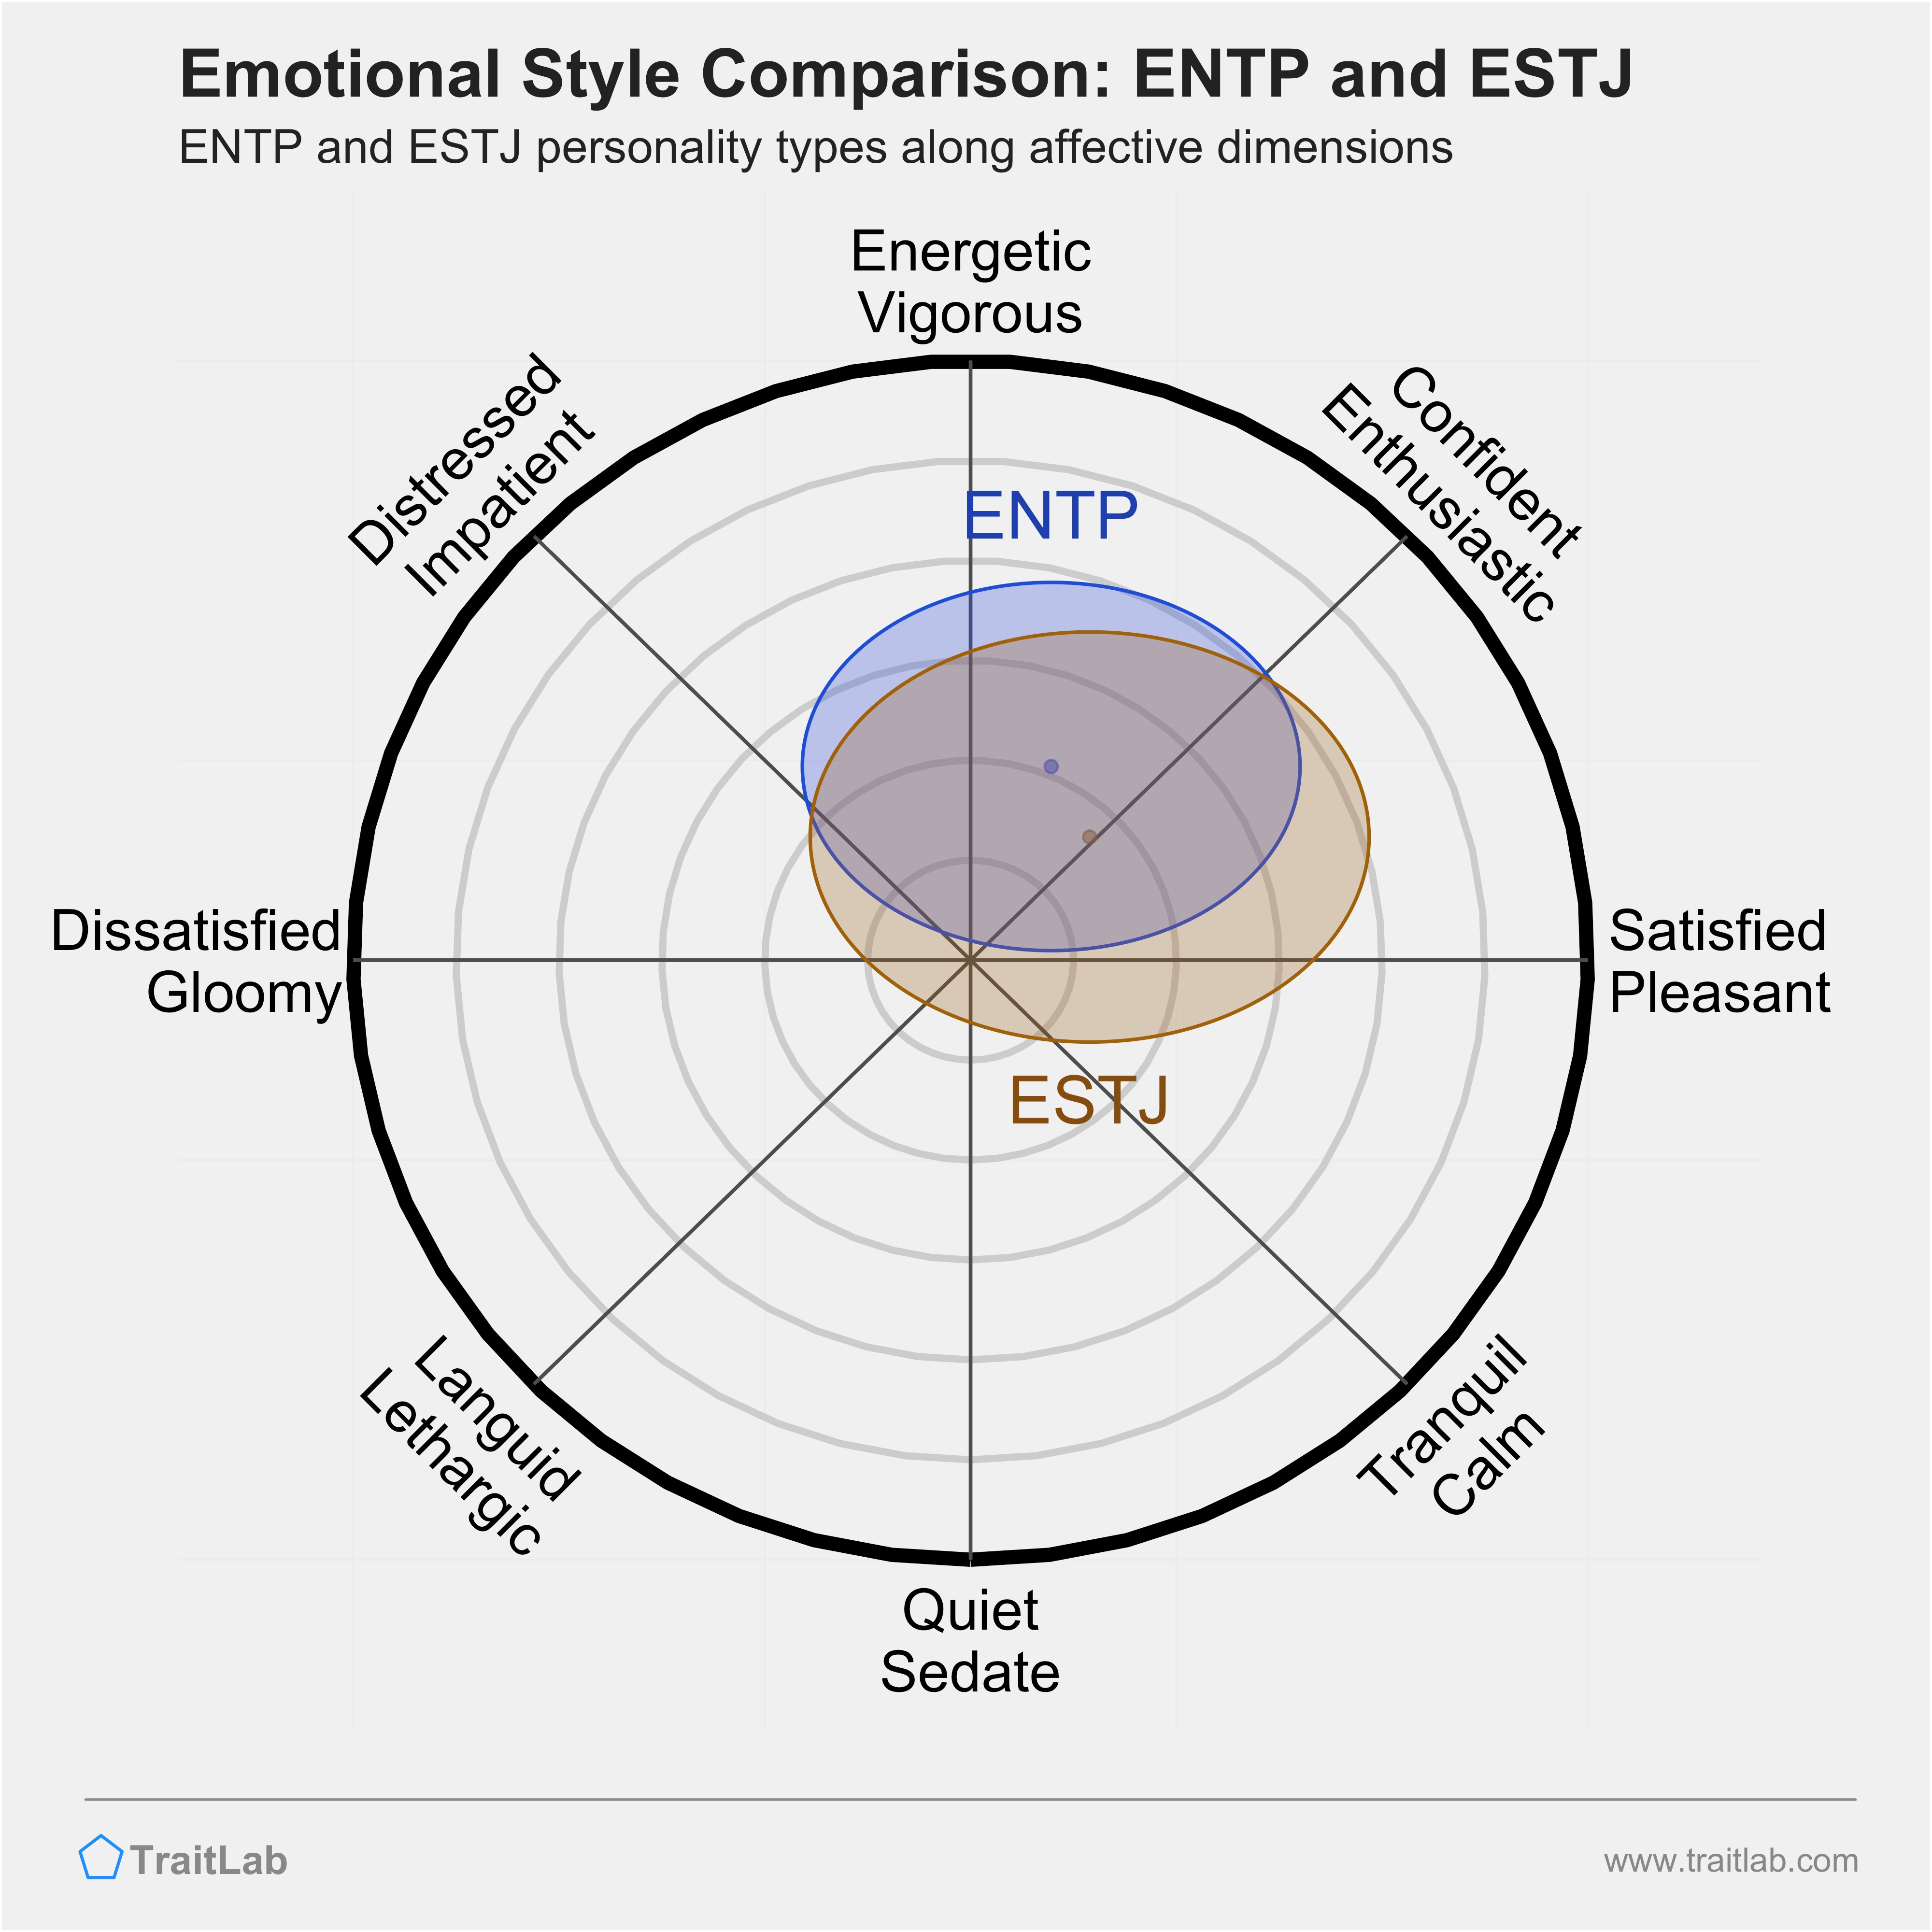 ENTP and ESTJ comparison across emotional (affective) dimensions